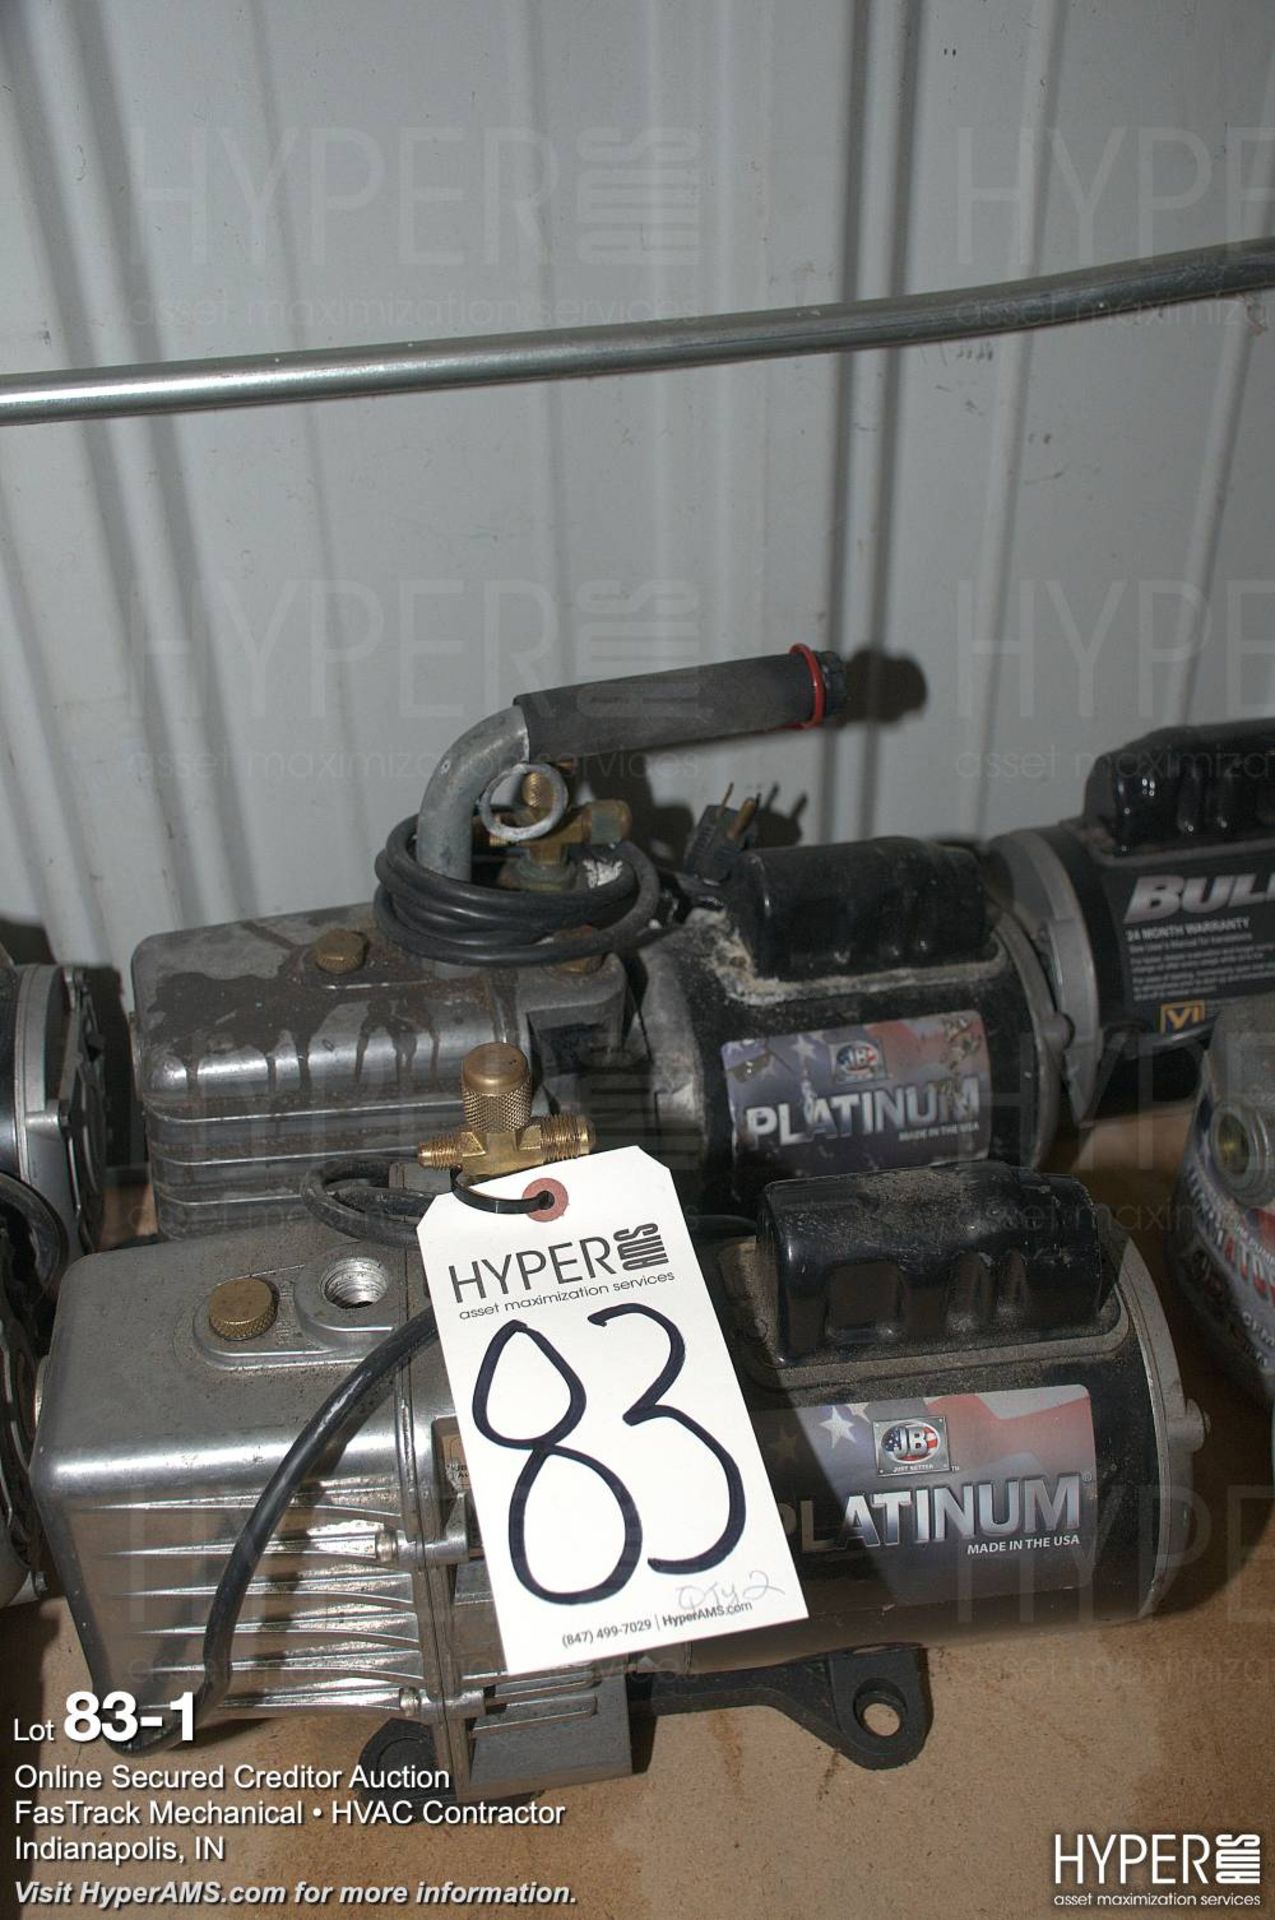 (2) JB Platinum vacuum pumps (1) missing hand